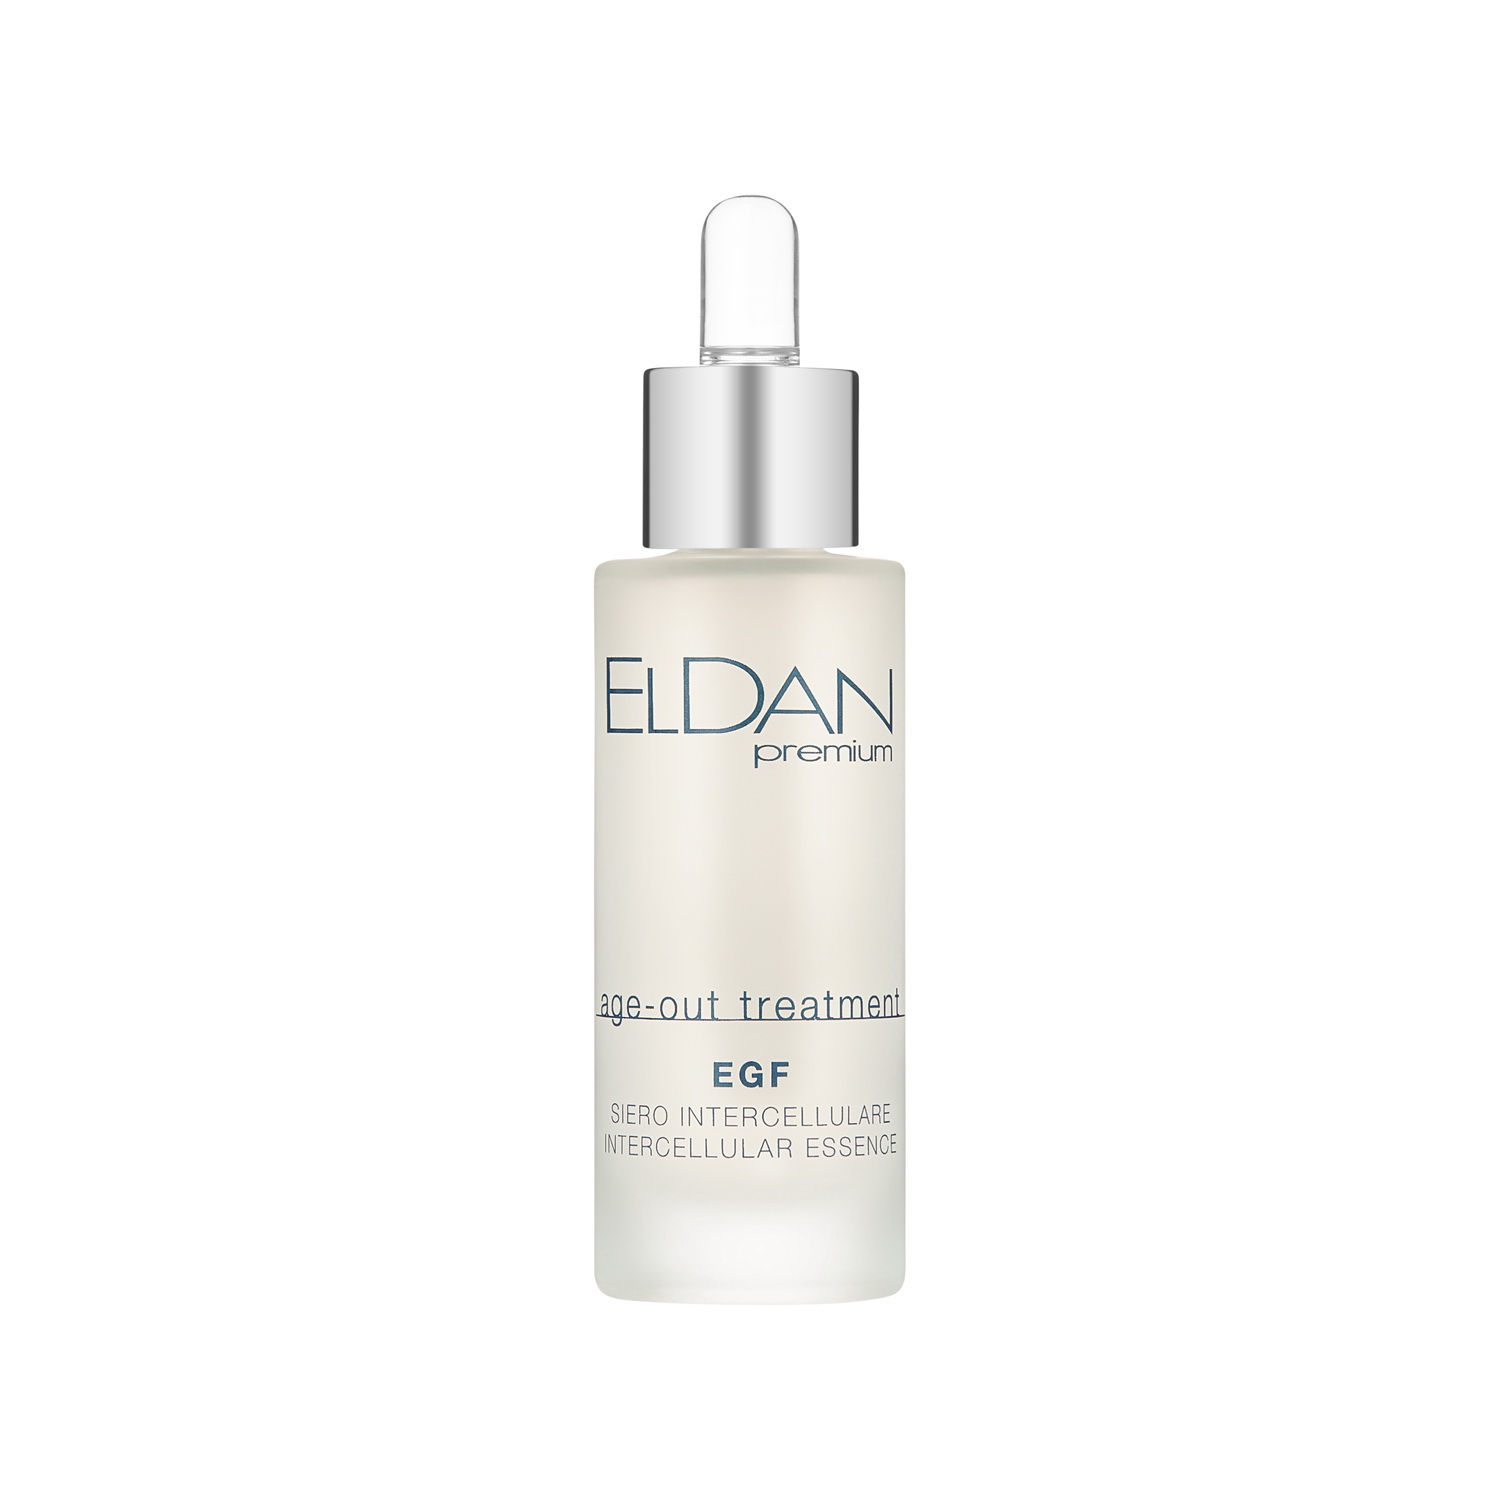 Сыворотка для лица Eldan Cosmetics EGF Intercellular Essence регенерирующая, 30 мл сыворотка для лица eldan cosmetics egf intercellular essence регенерирующая 30 мл